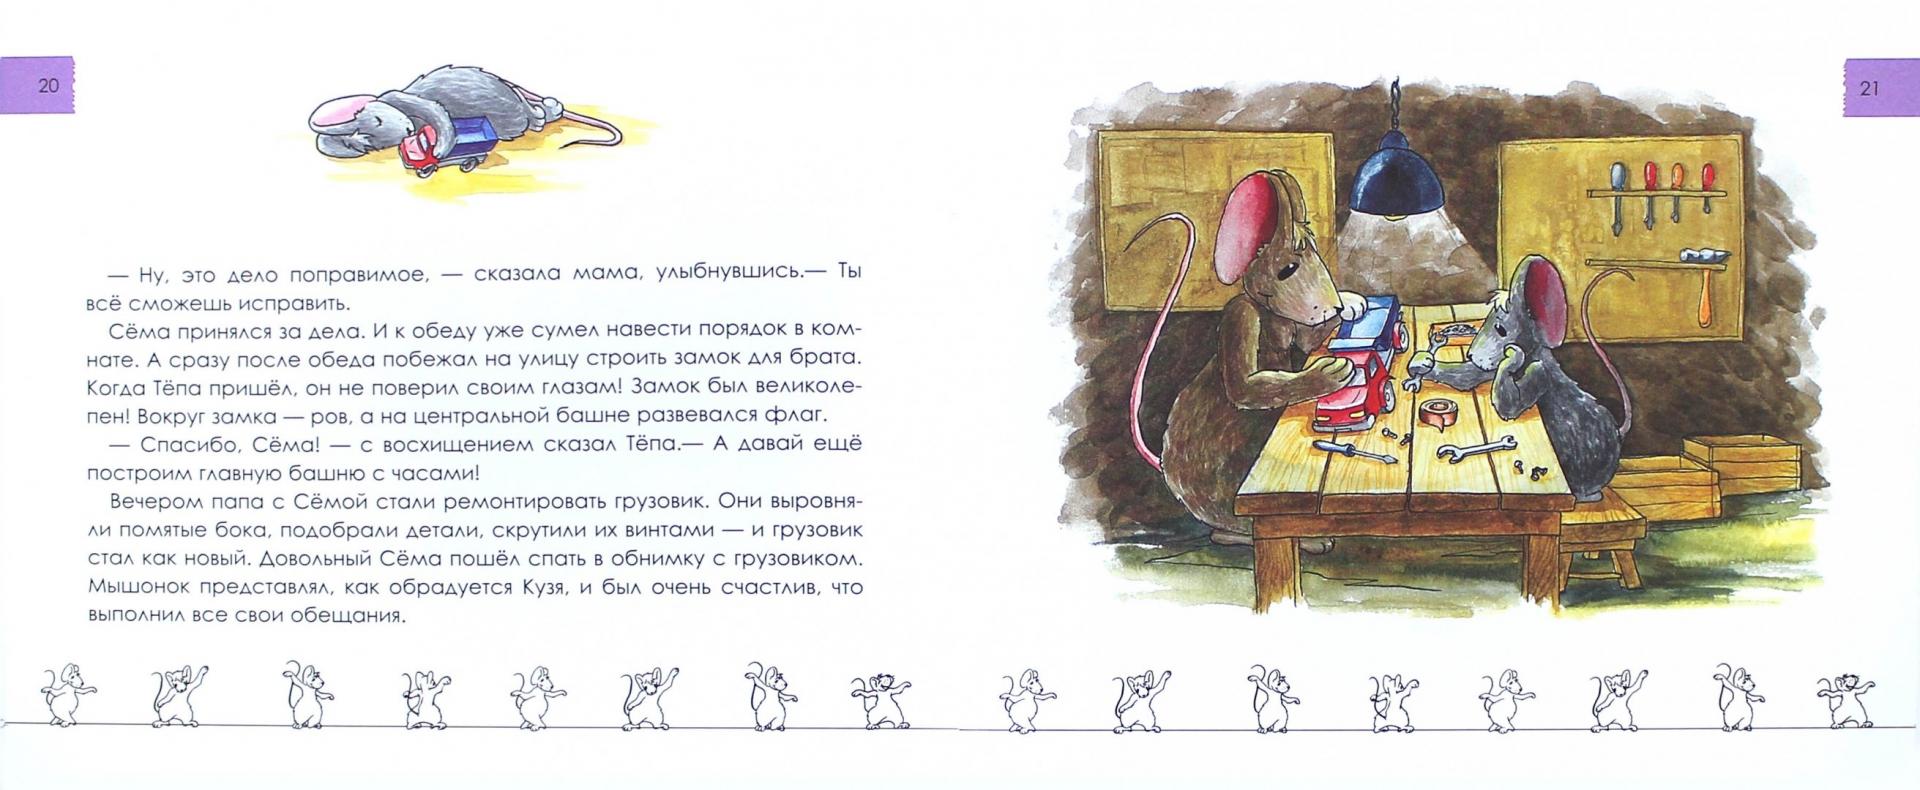 Иллюстрация 1 из 18 для Напрасные обещания - Наталия Лукомская | Лабиринт - книги. Источник: Лабиринт